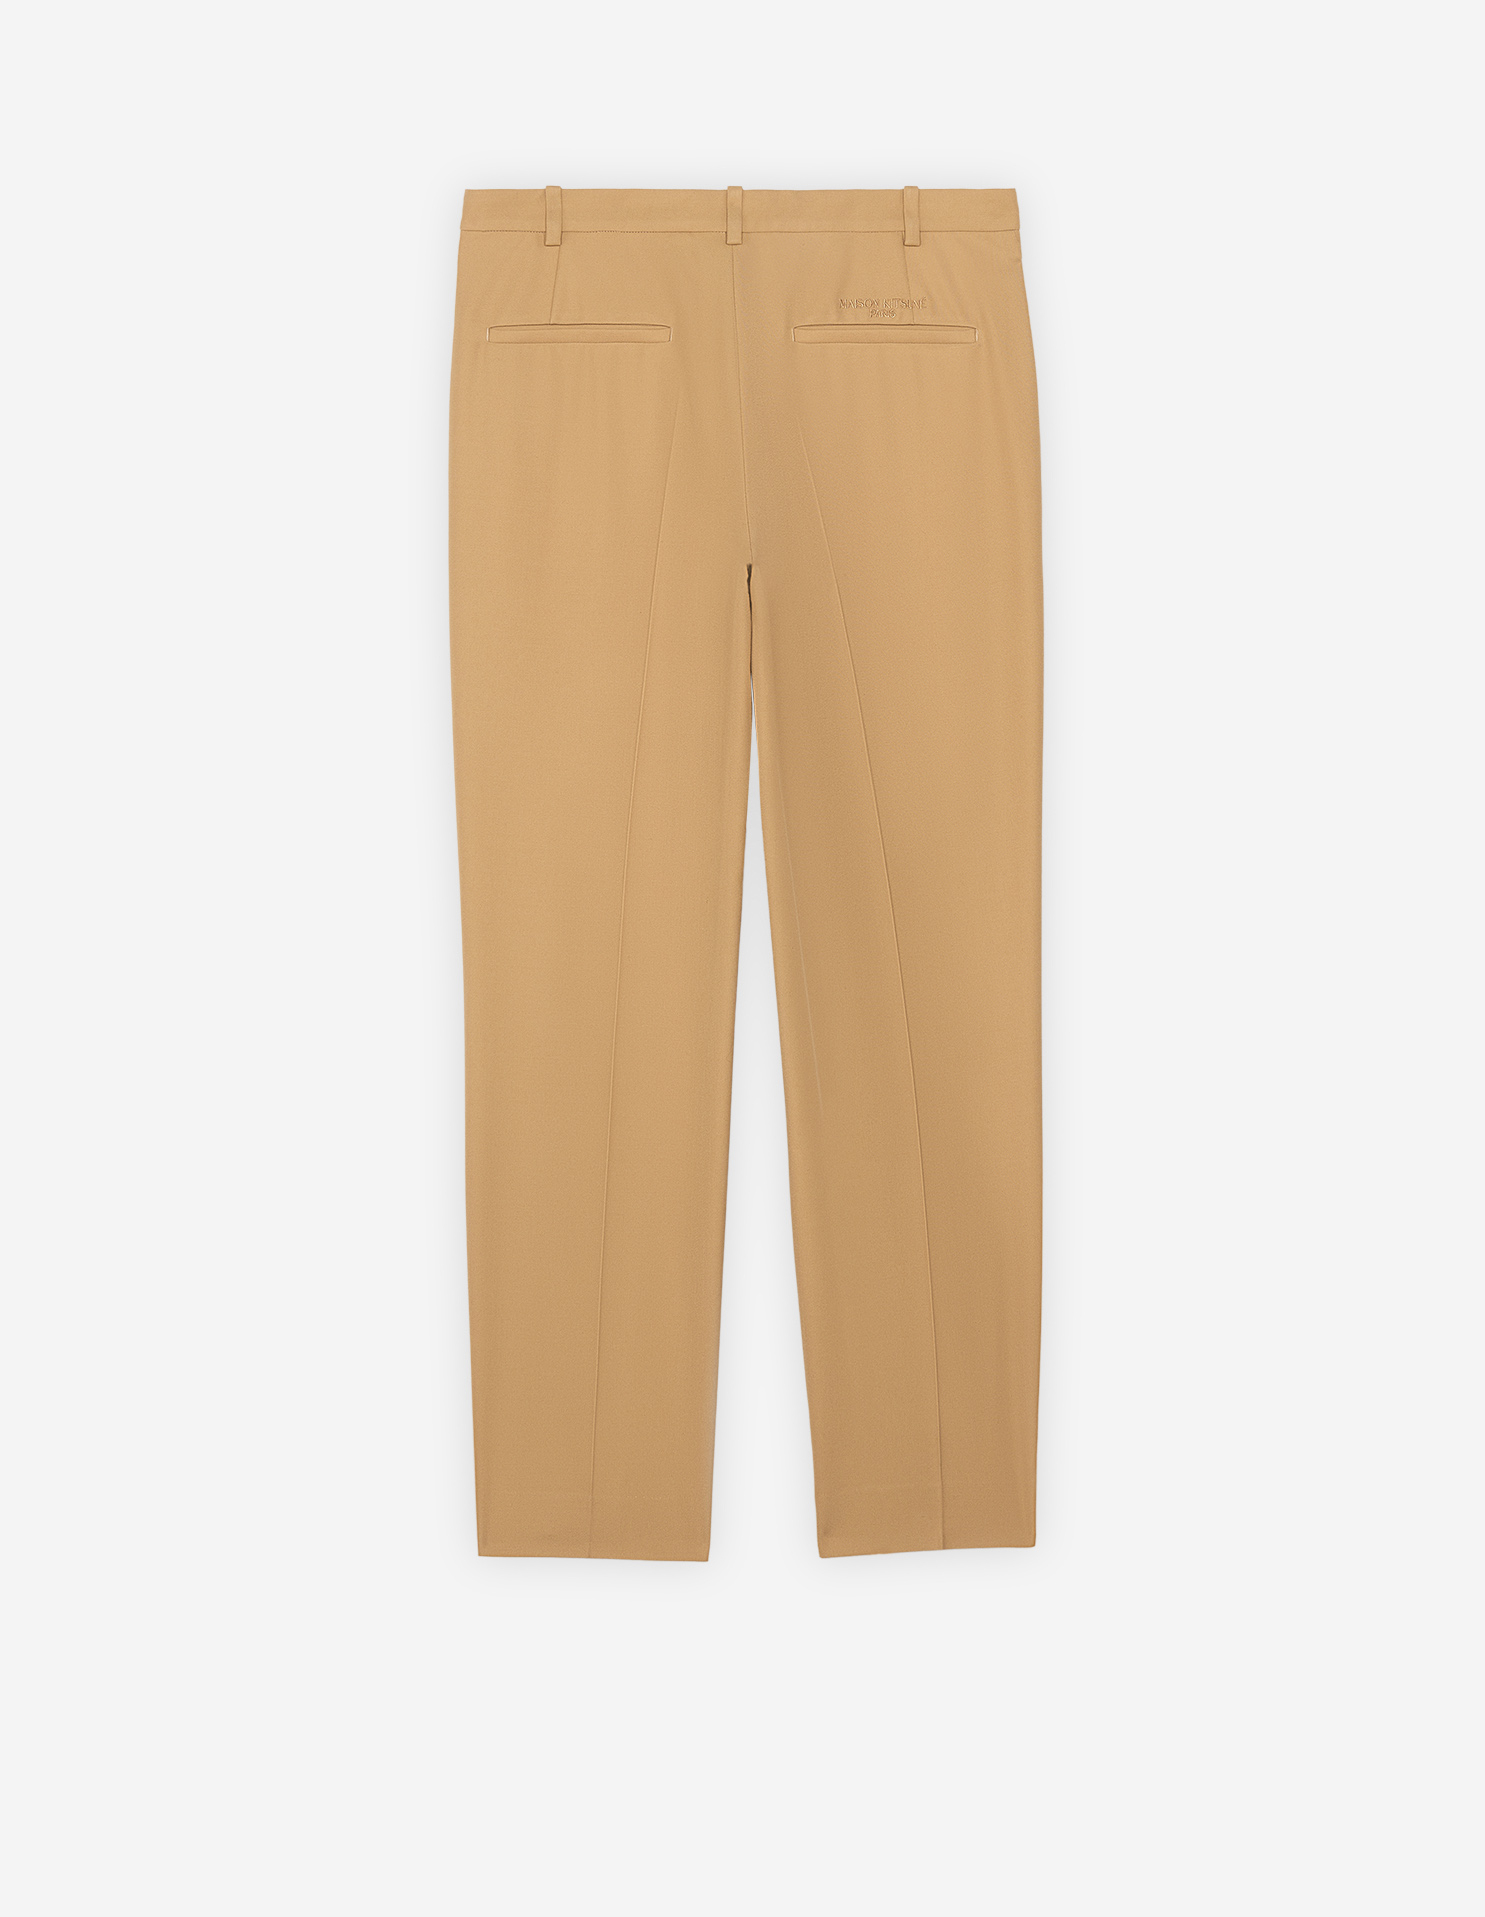 Men's Casual Pleated Solid Suit Pants Zipper Pocket Ankle-Length Pants  Trousers - Walmart.com